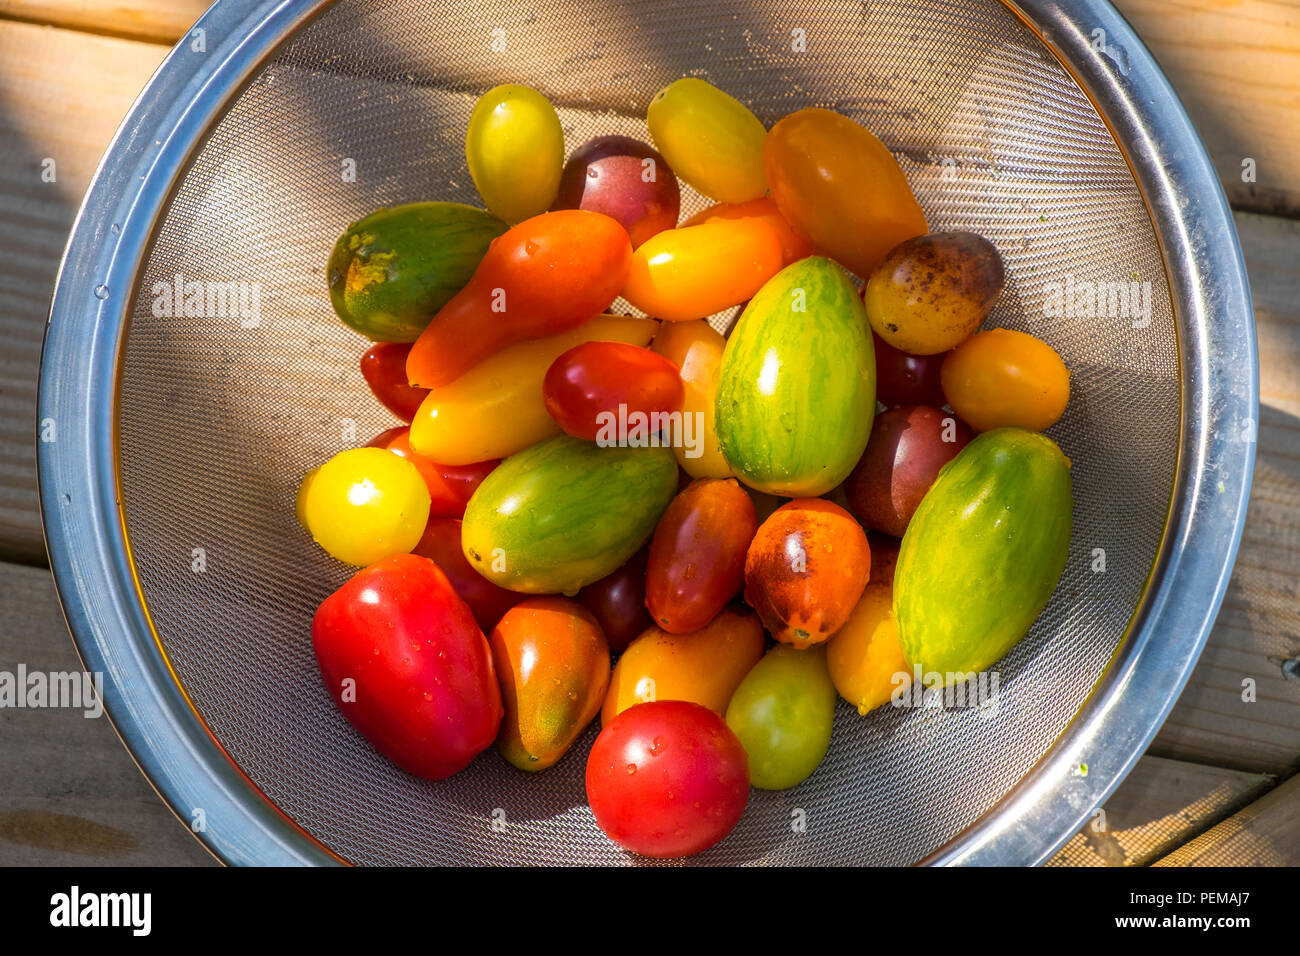 Eine Nahaufnahme von einem Drahtkorb mit einer Auswahl an bunten frischen Tomaten gefüllt. Stockfoto